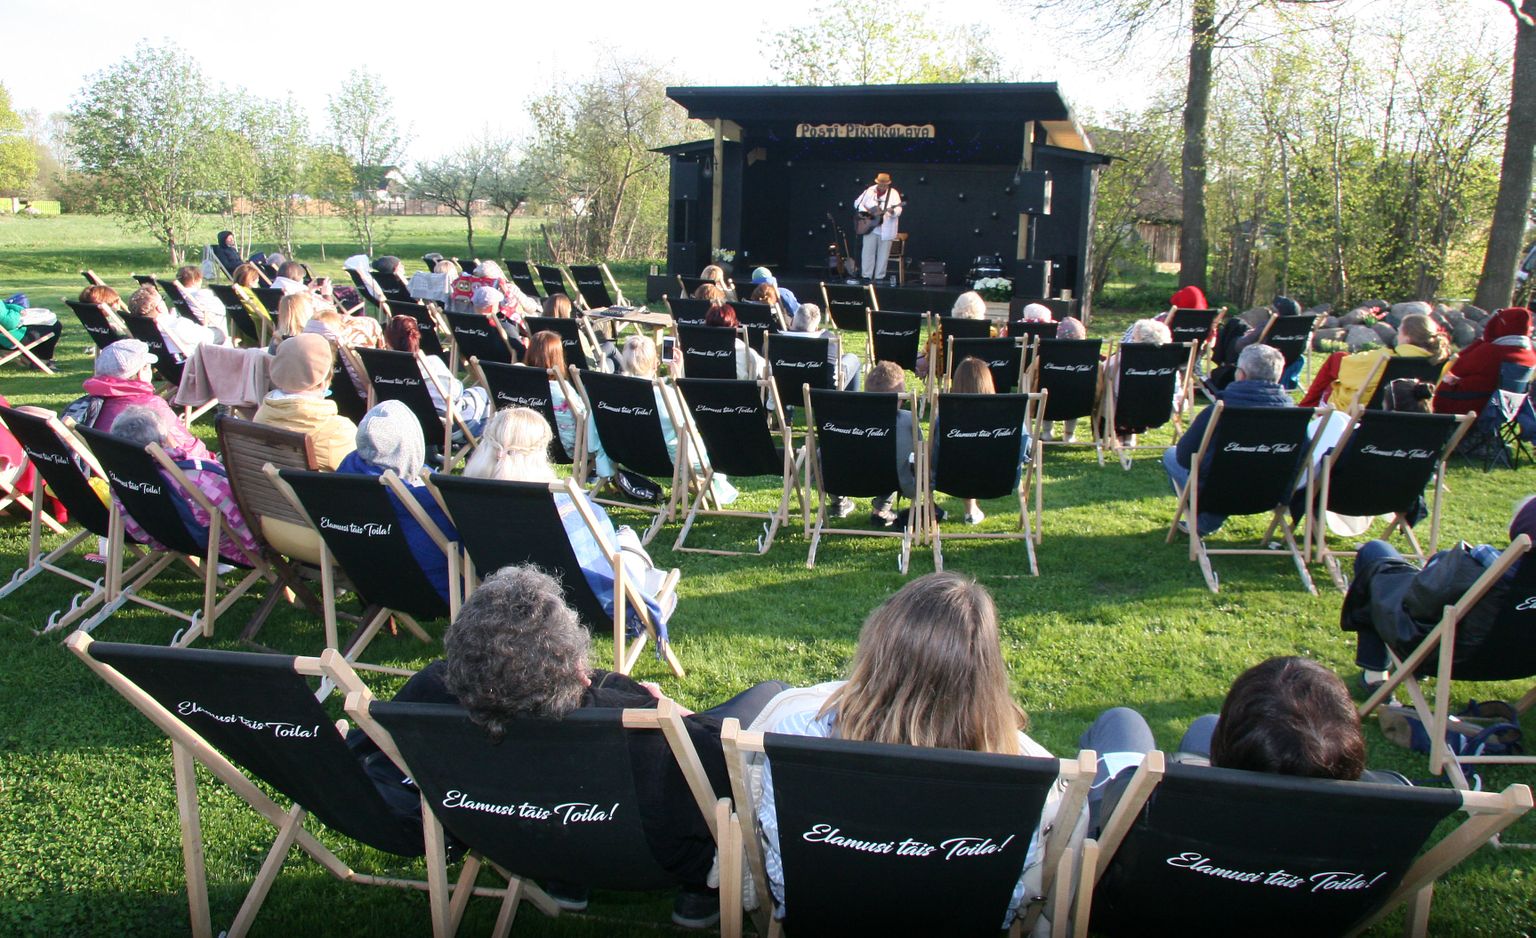 Пикниковая сцена, построенная семьей Ныммисте во дворе хутора Пости в Сака, стала в Ида-Вирумаа популярным местом для любителей летней музыки.